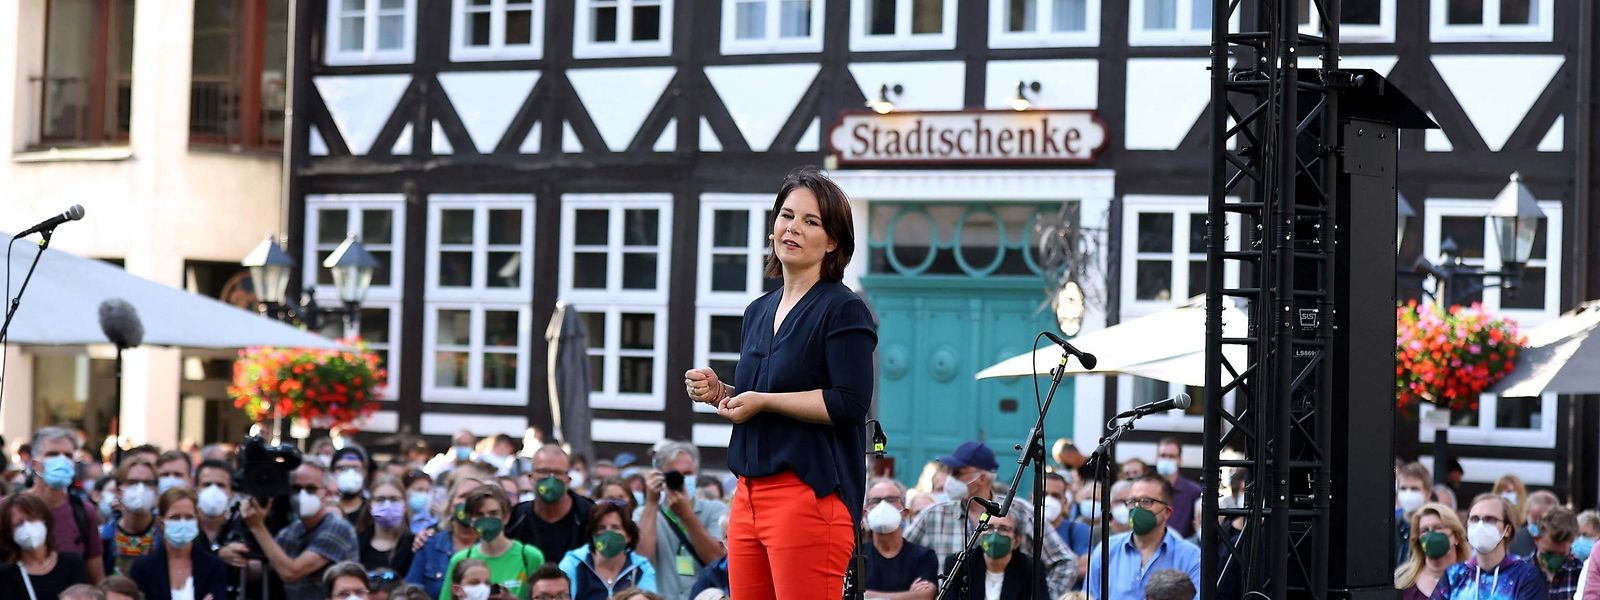 Der Straßenwahlkampf hat begonnen: Annalena Baerbock, hier in Hildesheim, sowie Armin Laschet und Olaf Scholz müssen die Wähler von sich überzeugen. 